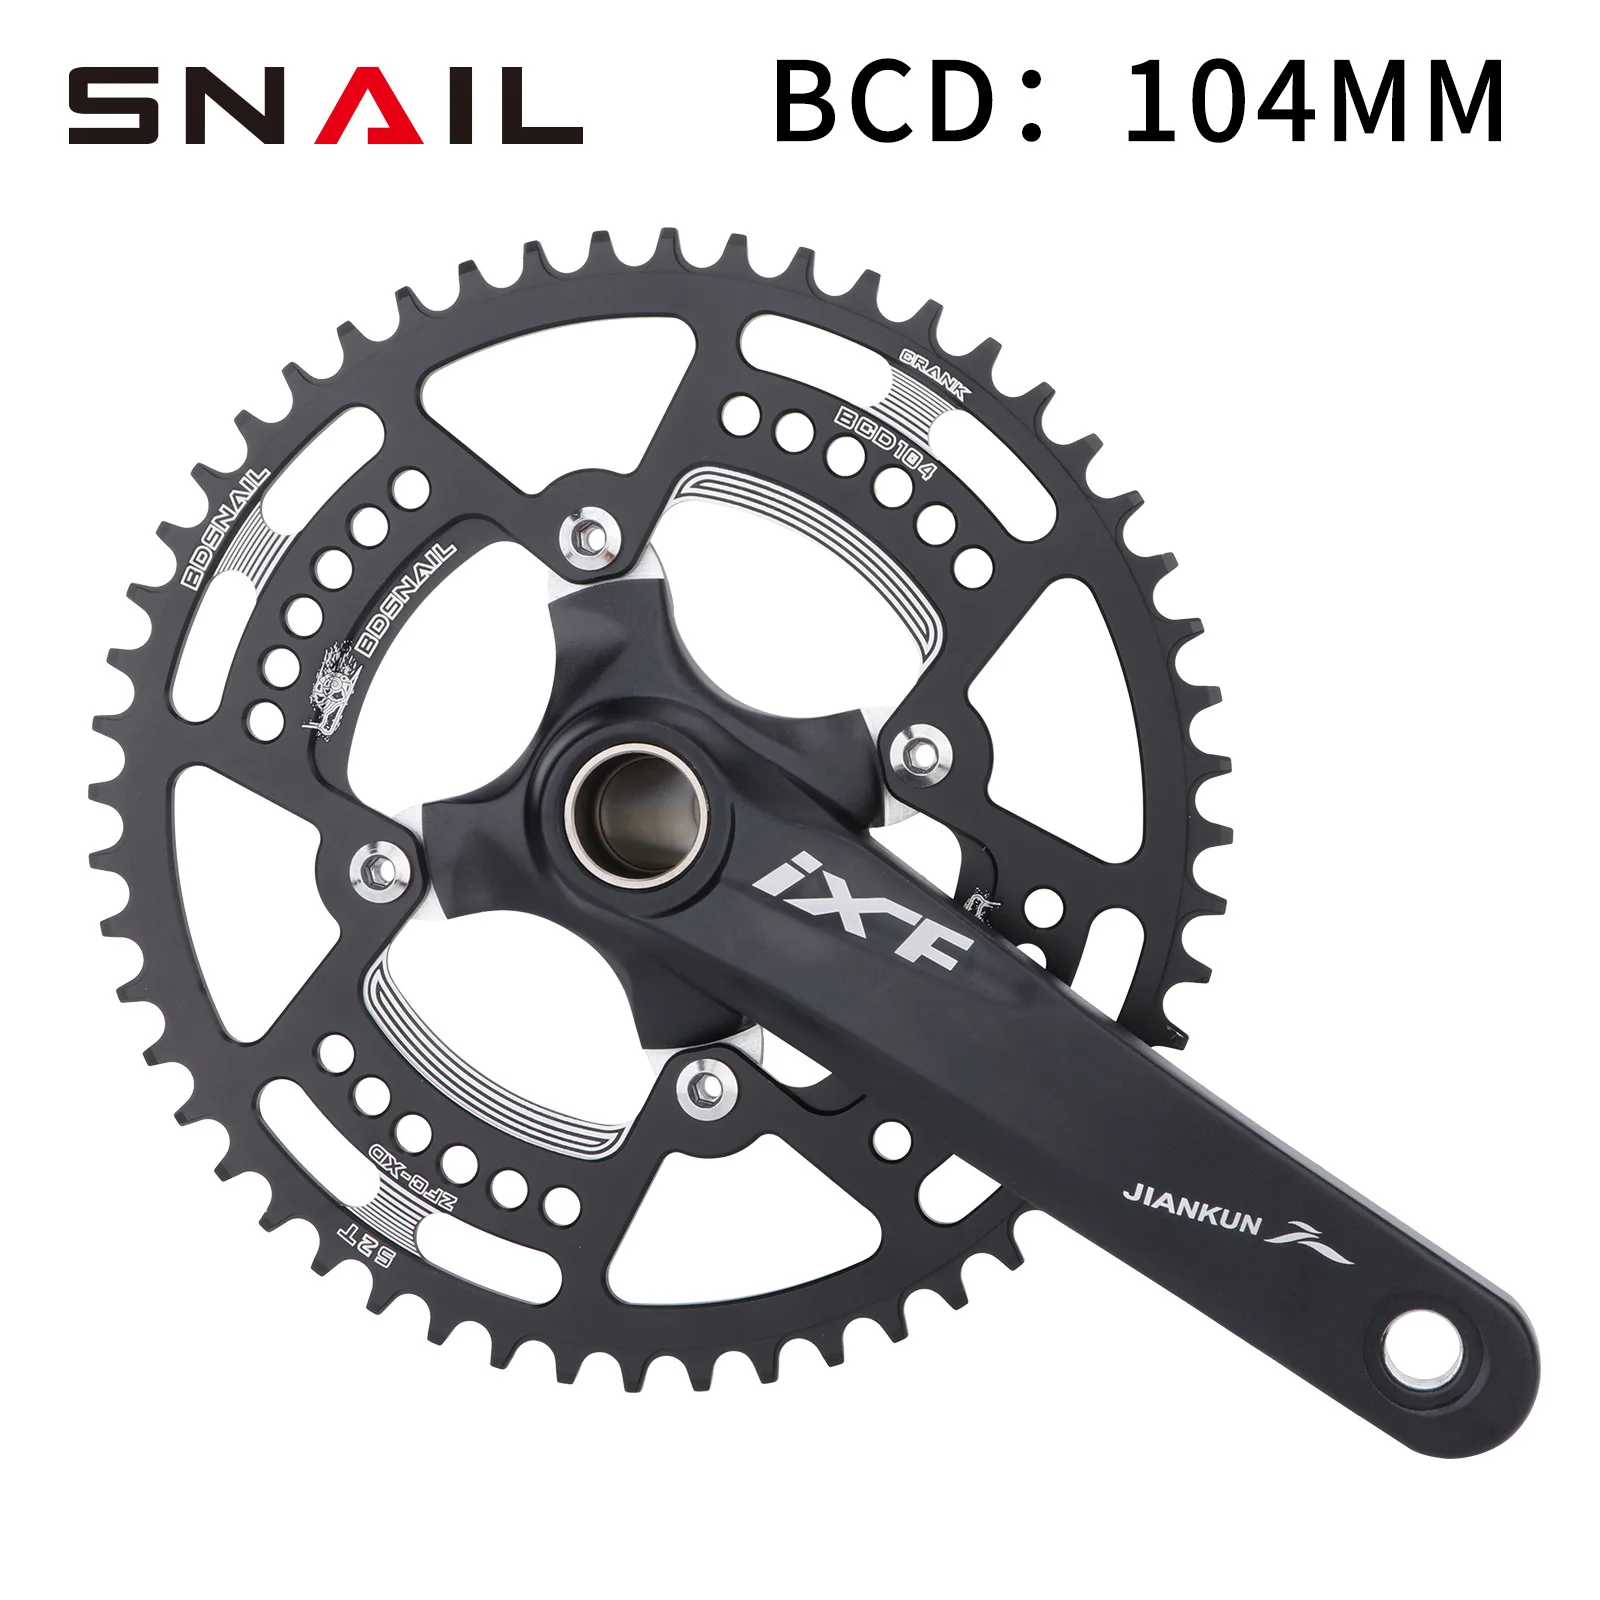 

SNAIL Bcd crown 104 велосипедная звездочка, широкий, узкий, 30T-52T, круглый диск, одна цепь, колесо для Shimano/SRAM шатун для горного велосипеда